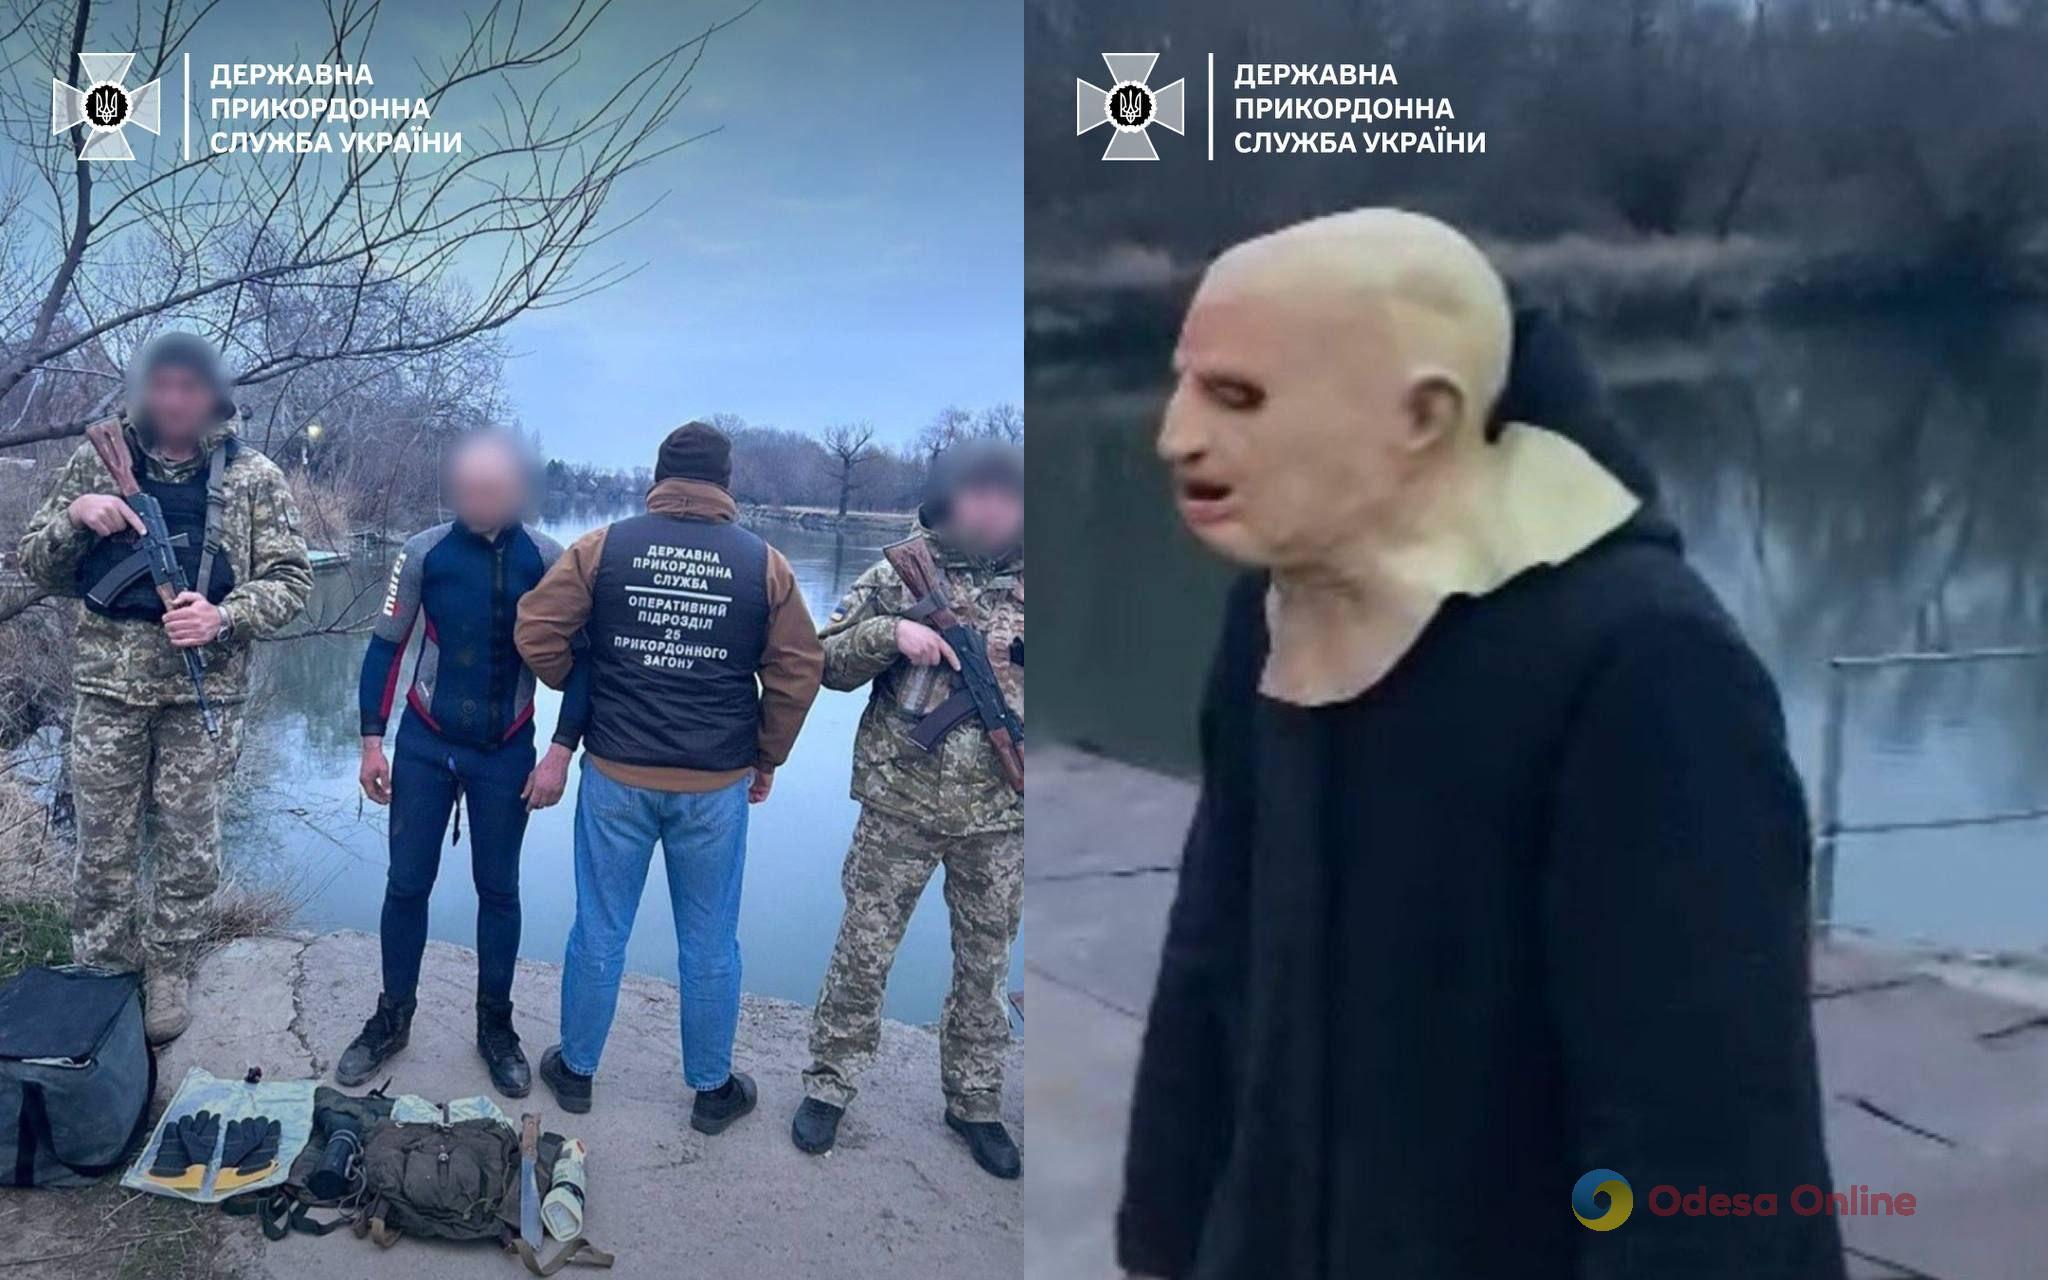 На Одещині спіймали чоловіка у масці, плащі та гідрокостюмі, який намагався незаконно перетнути кордон